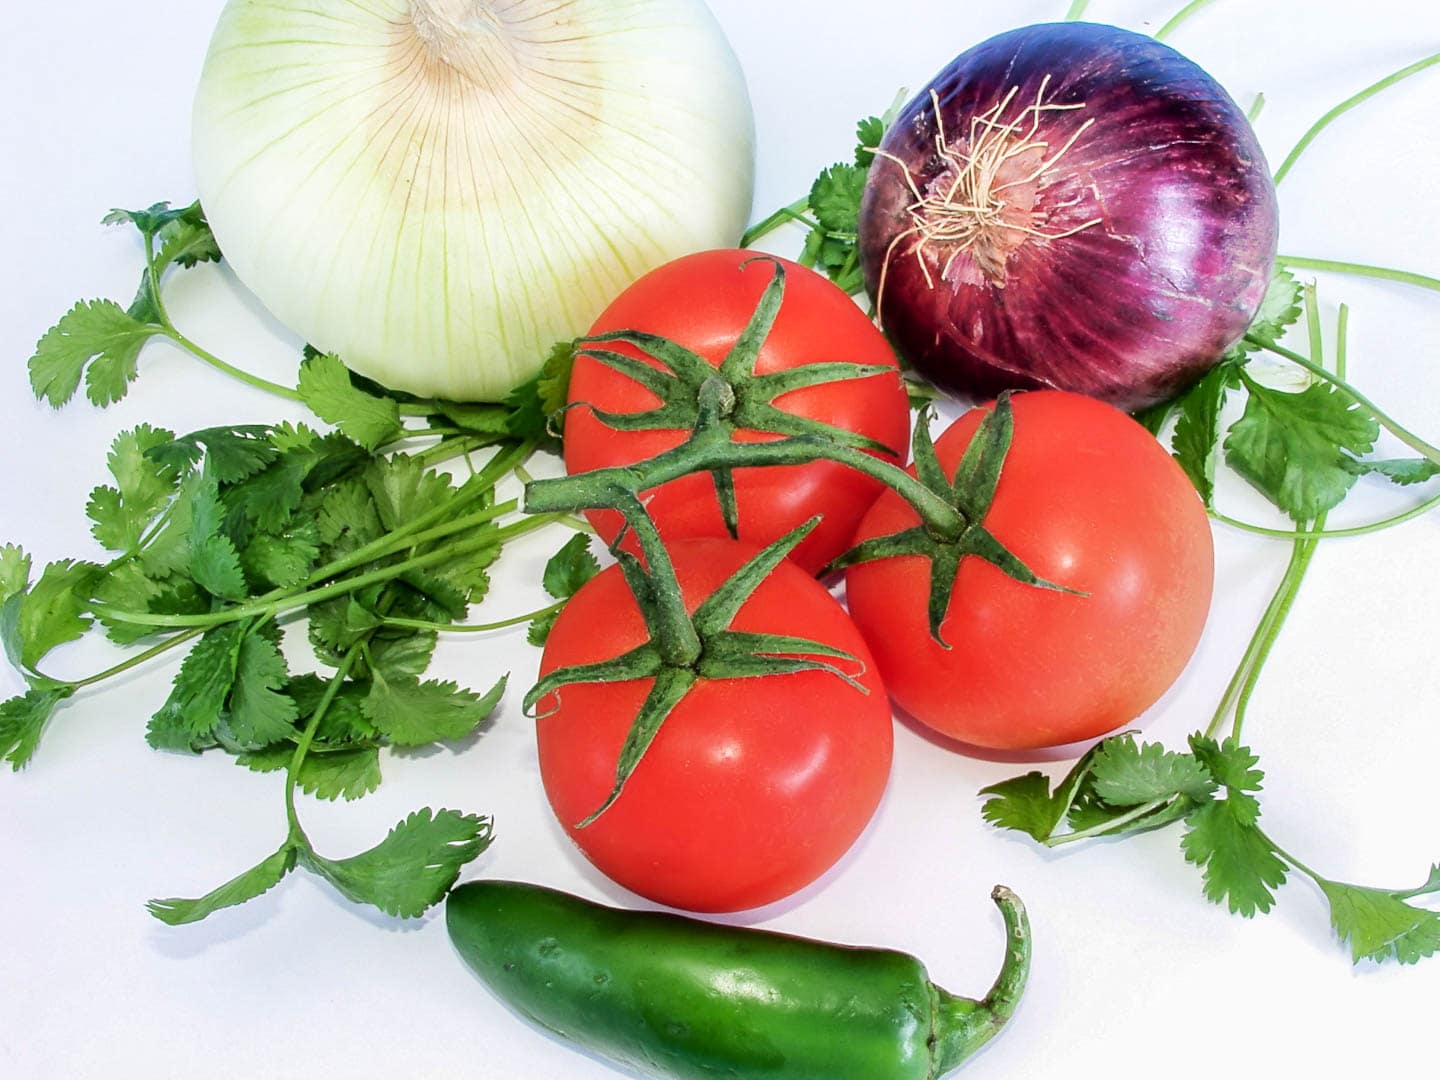 pico de gallo ingredients - onions, tomatoes, chile pepper, fresh cilantro